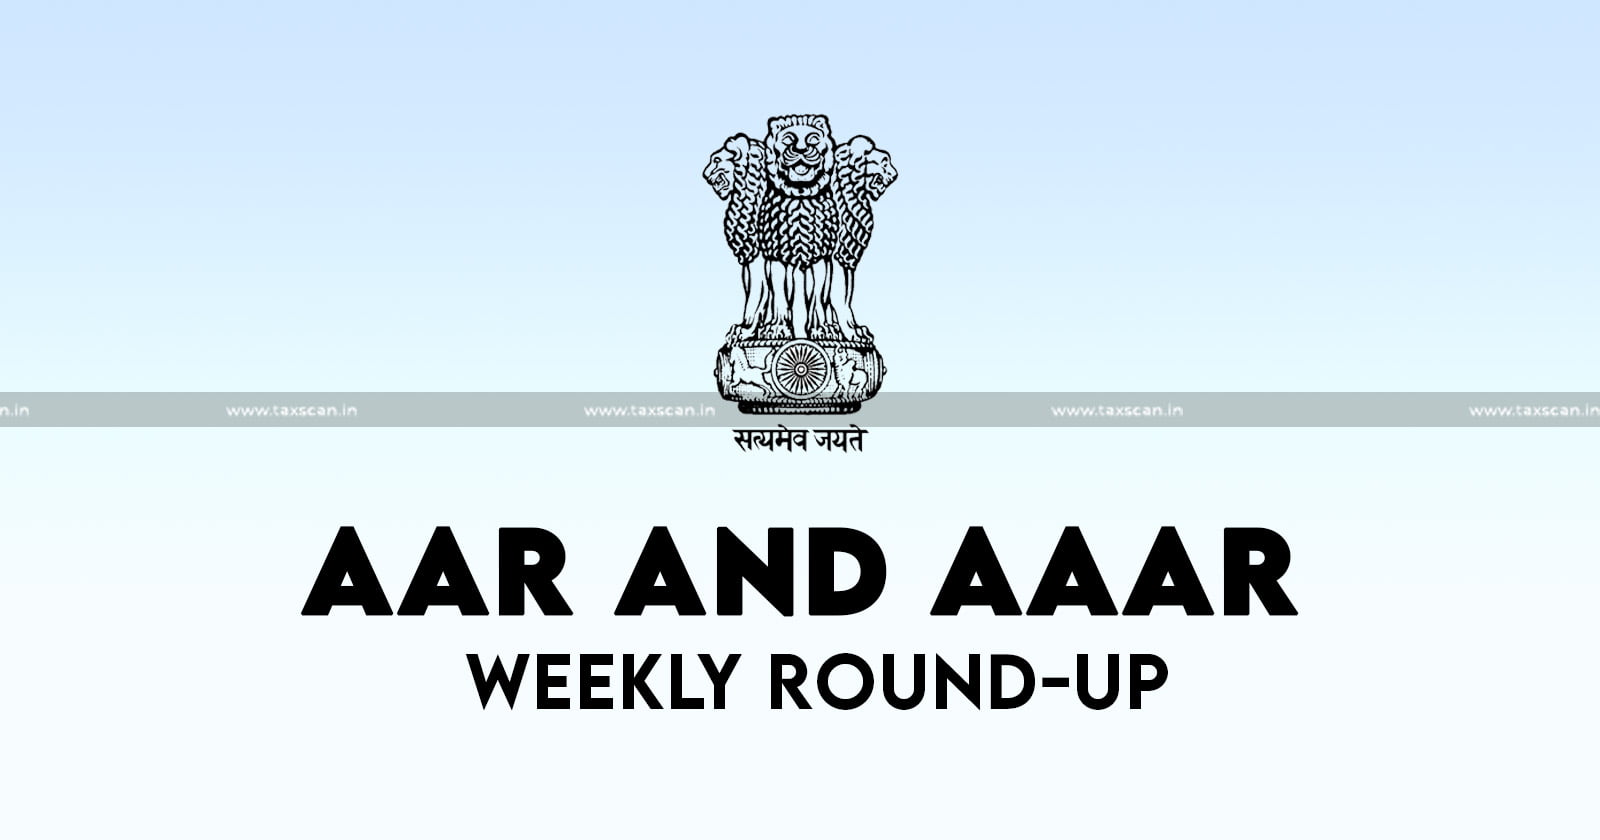 AAR and AAAR Weekly Round-Up AAAR Weekly Round-Up AAR Weekly Round-Up AAR AAAR